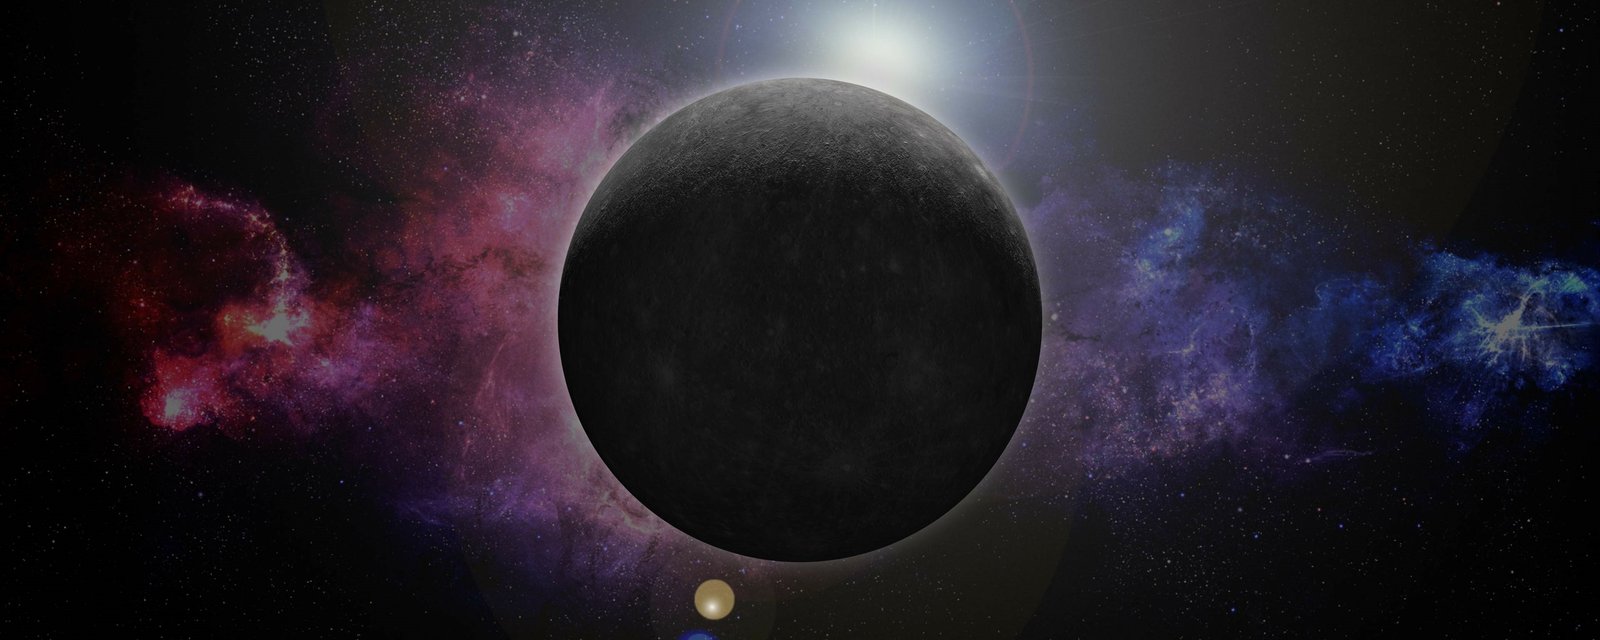 Astrologie: Mercure est rétrograde et voici ce que vous devez savoir